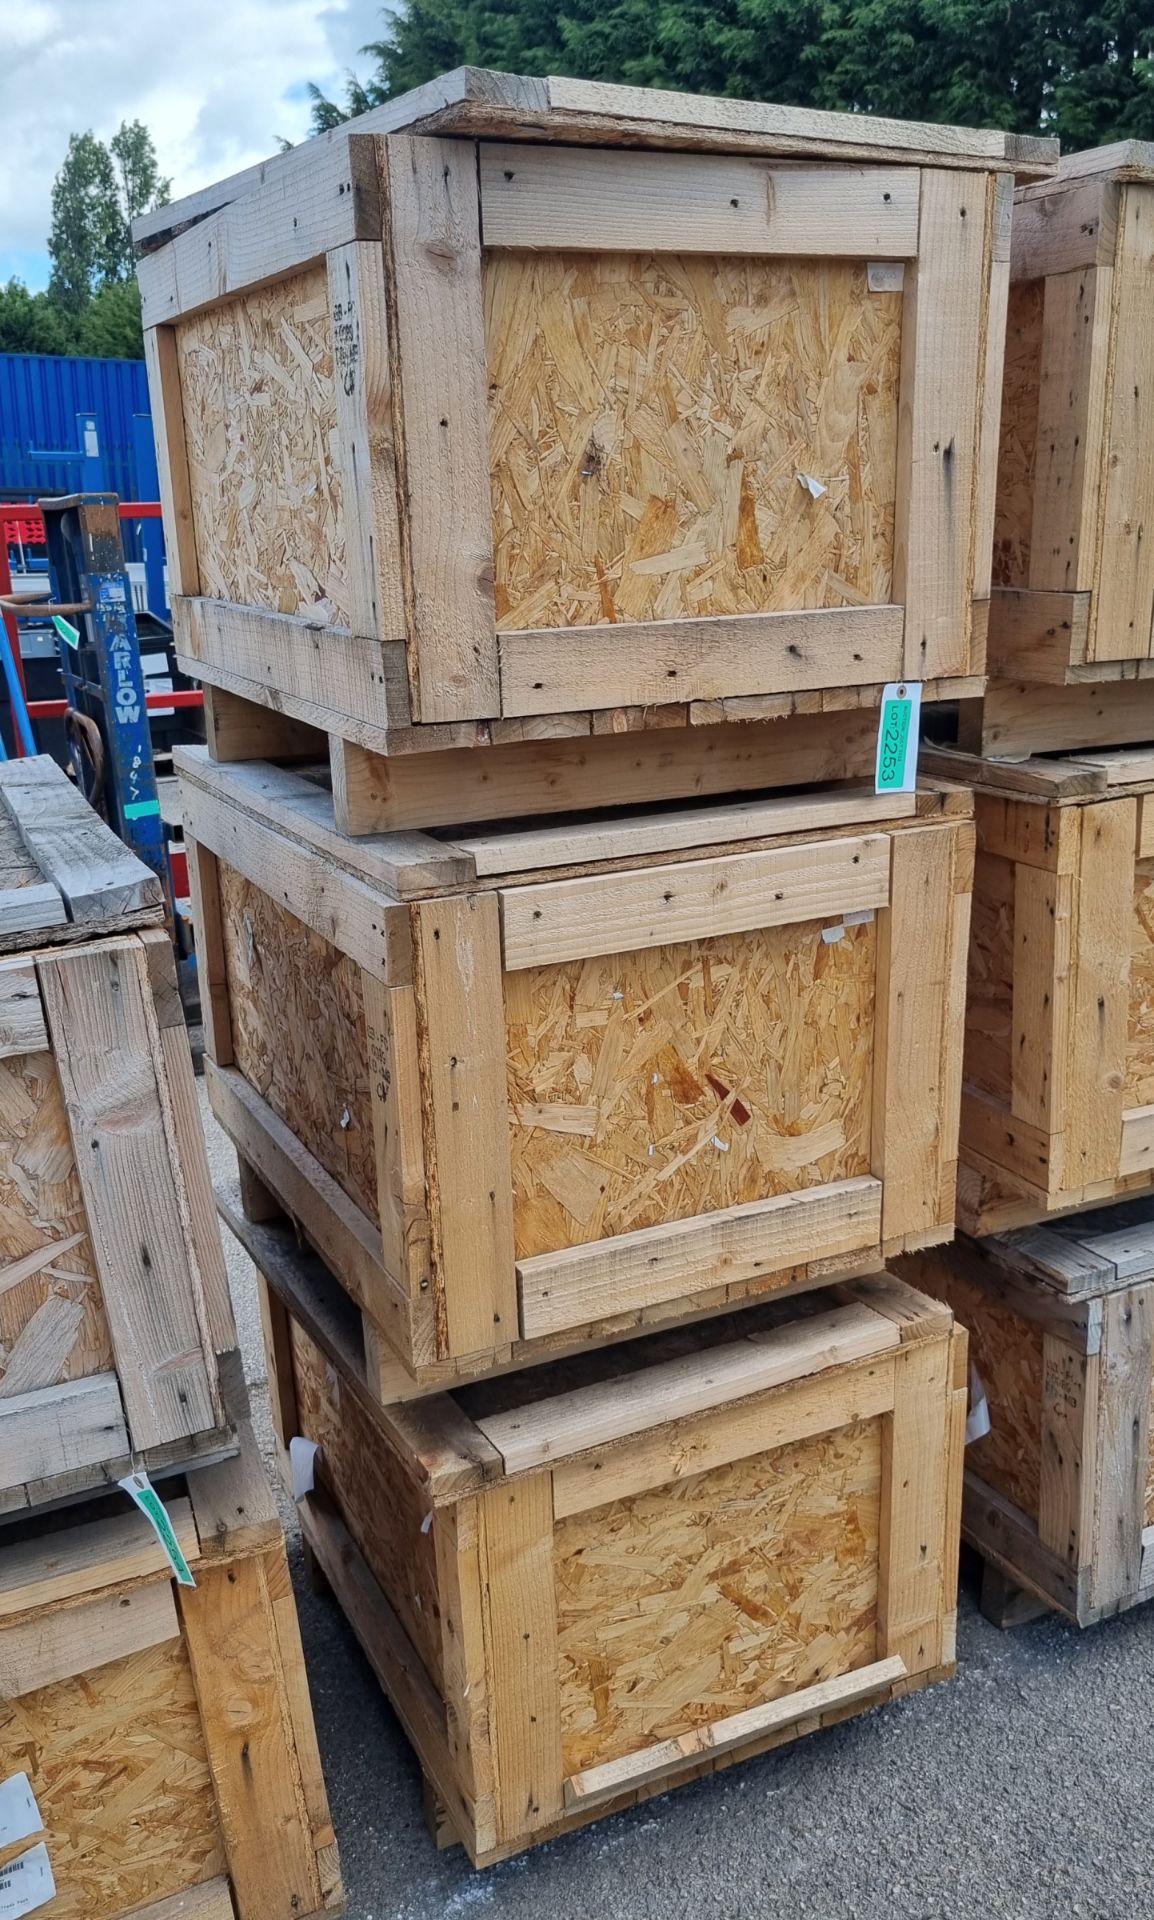 3x Wooden storage crates - L85 x D65 x H50cm